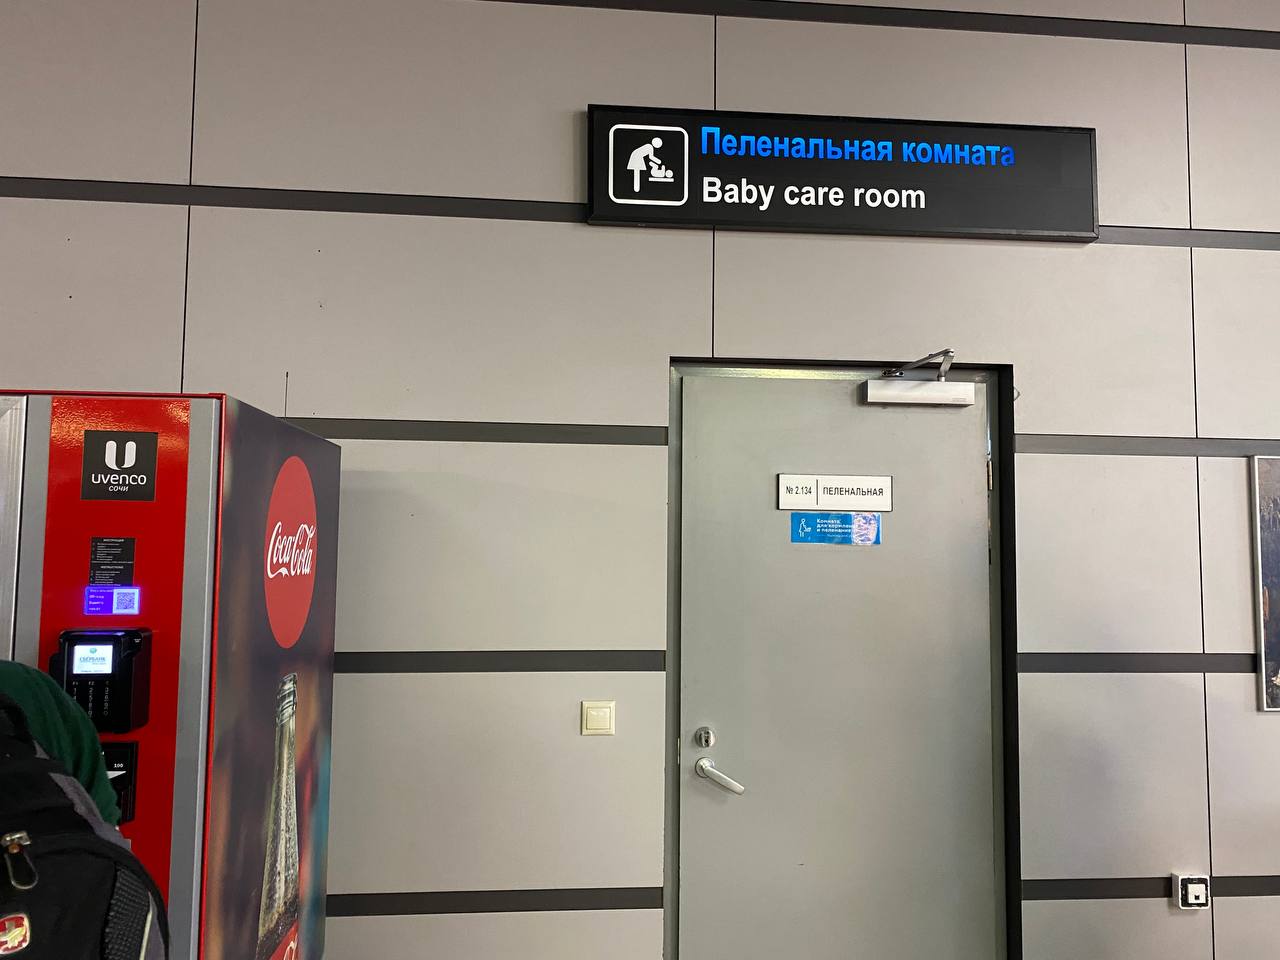 Аэропорт сочи камера хранения стоимость 2022. Камера хранения в аэропорту. Камера хранения аэропорт Сочи. Комната матери и ребенка в аэропорту Сочи. Аэропорт Сочи камера хранения багажа.